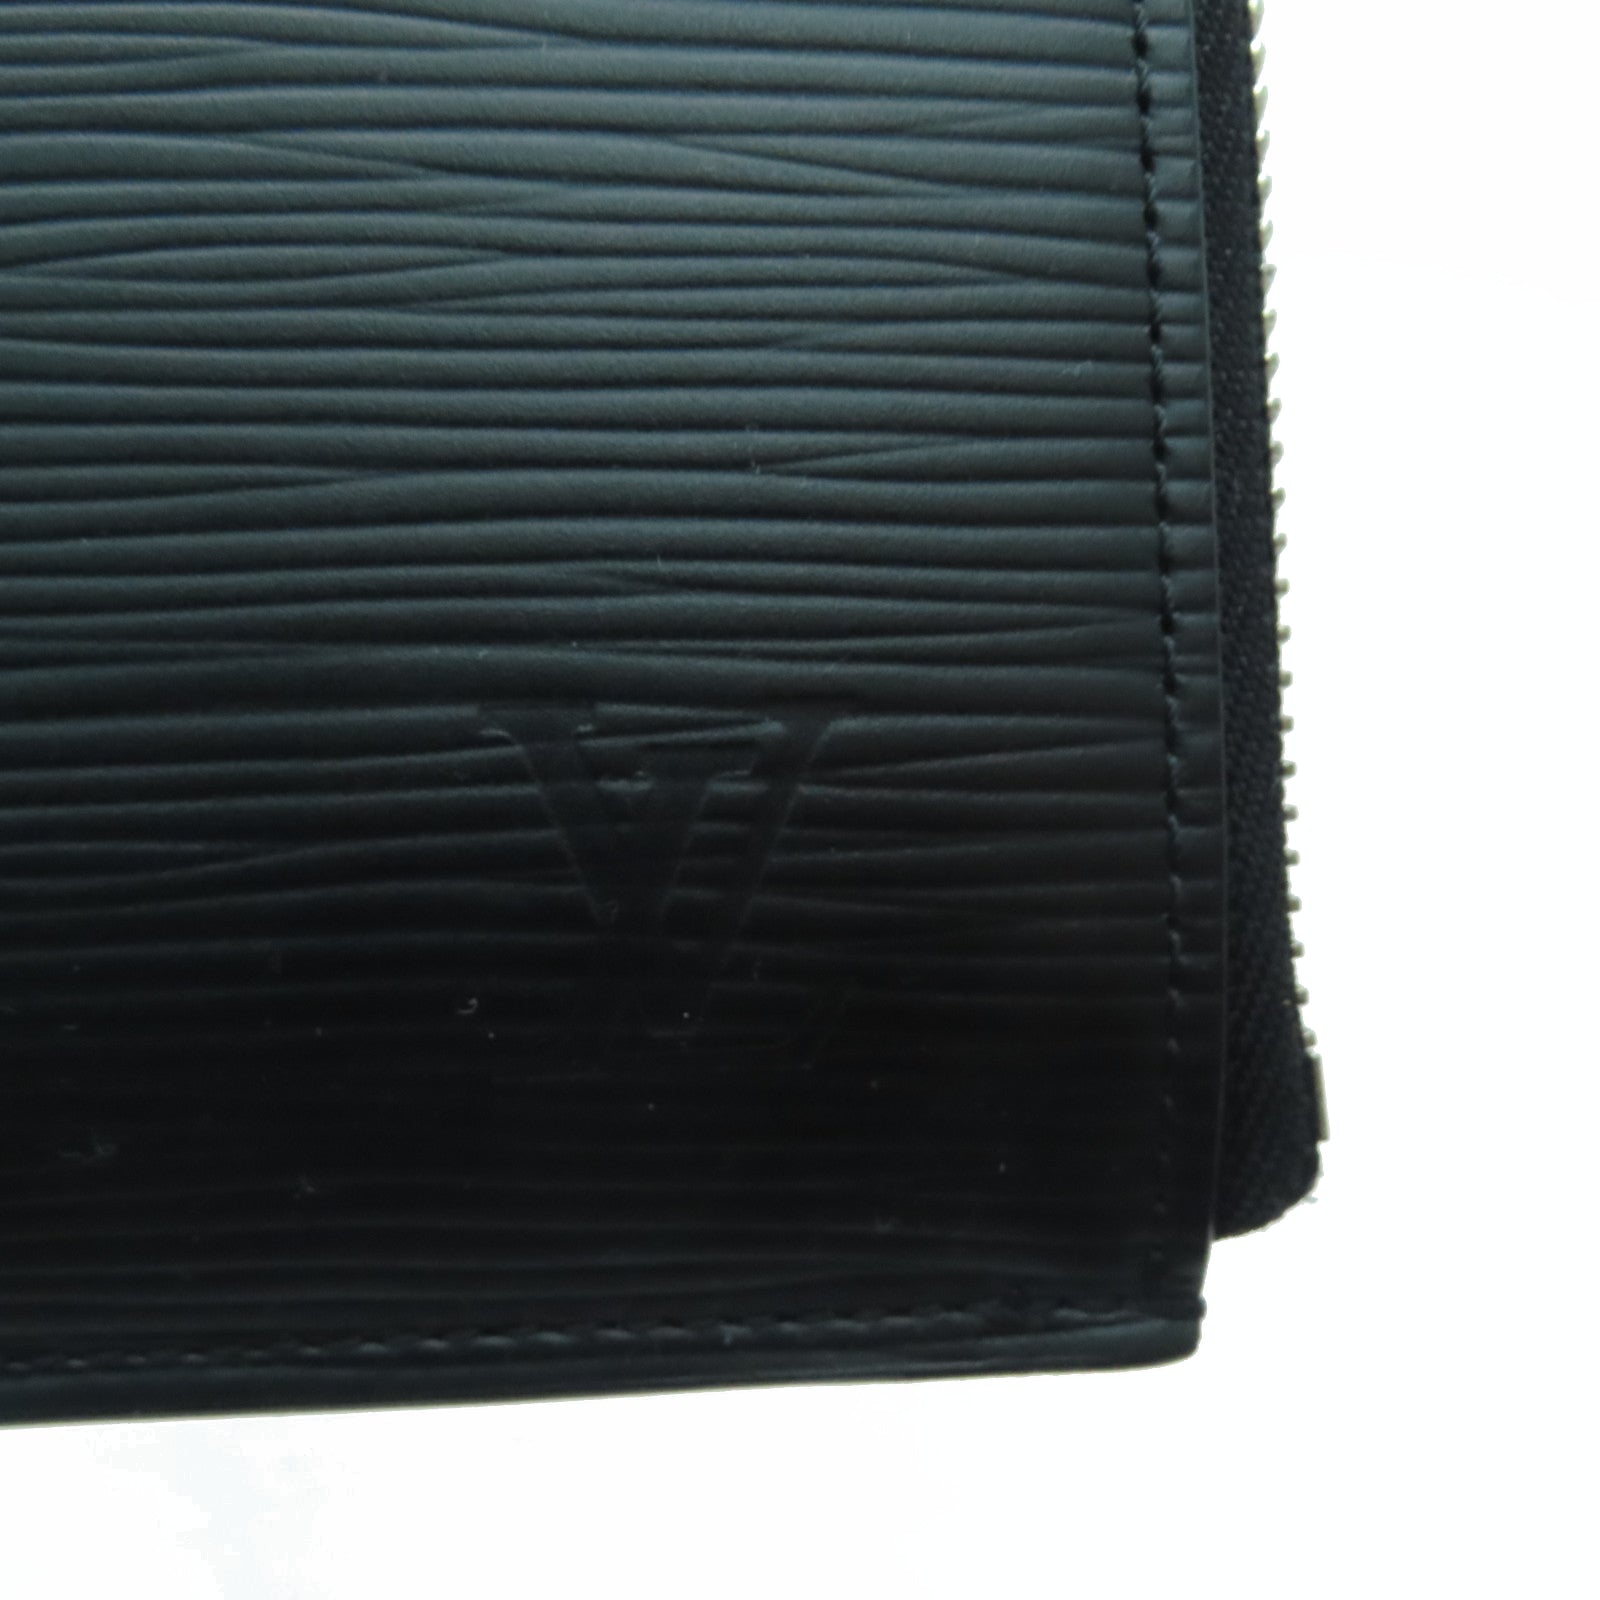 LOUIS VUITTON LOUIS VUITTON Pochette Jour GM business bag clutch M64153 Epi  leather Black Used M64153